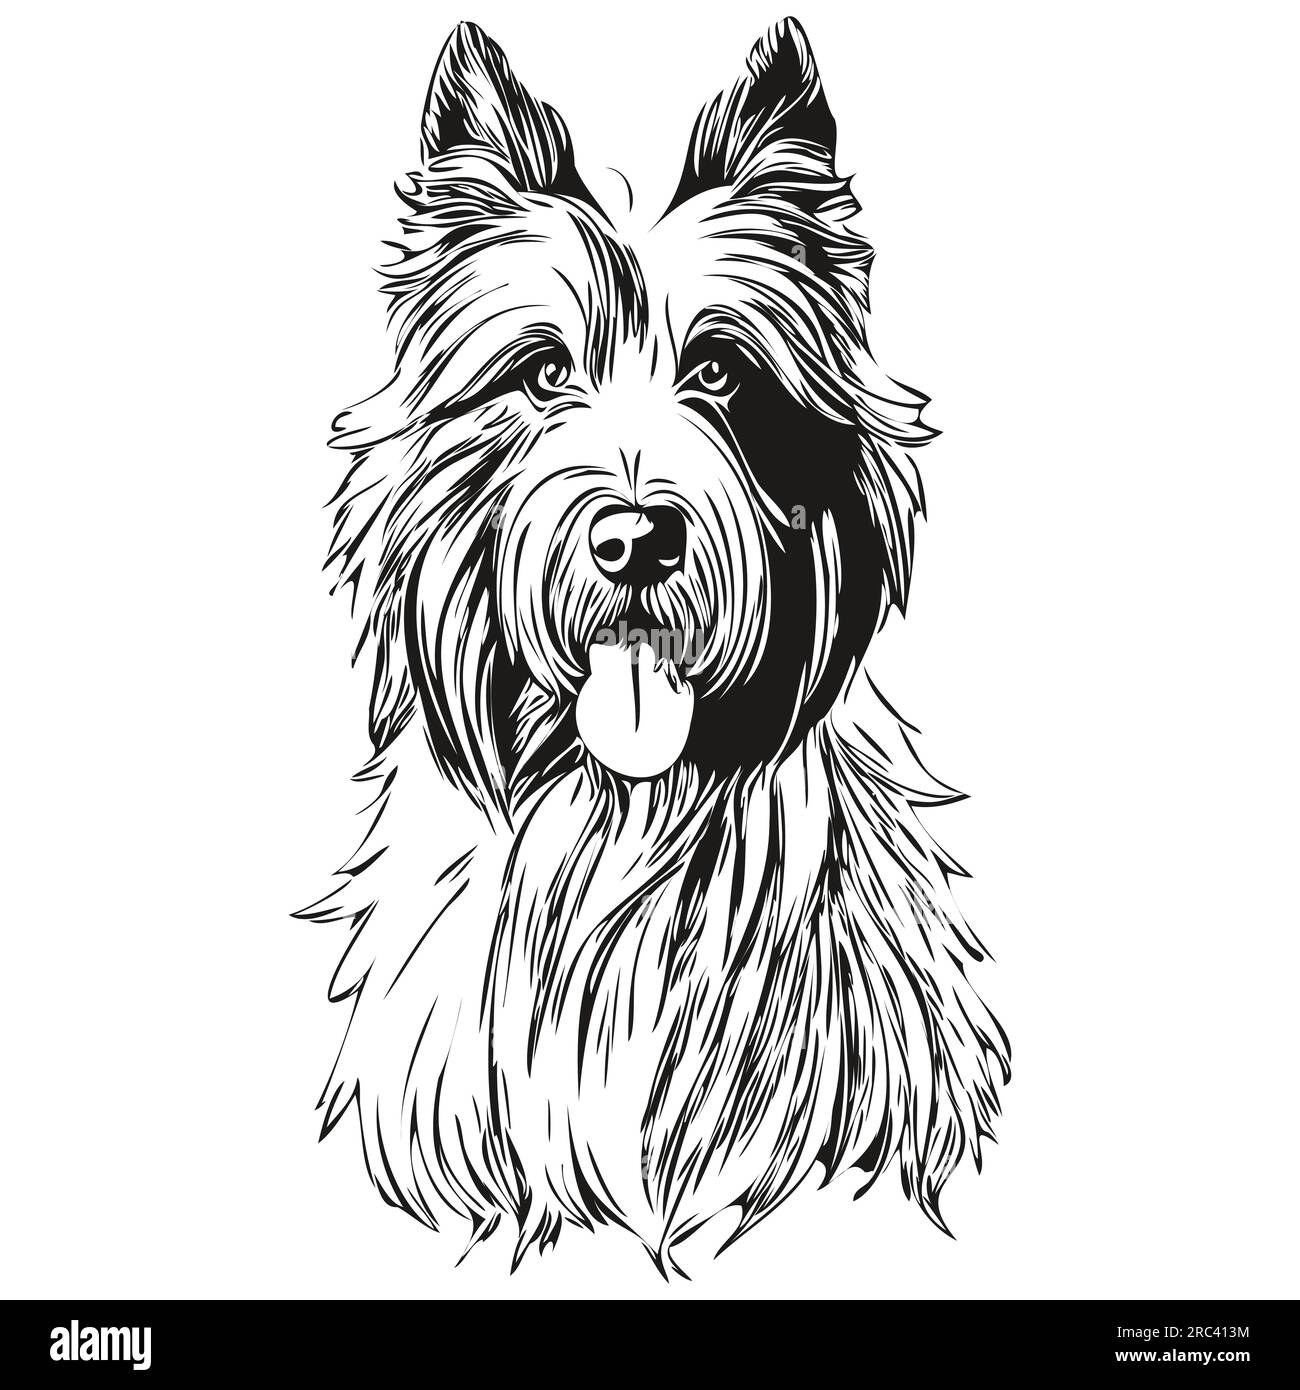 Dessin au trait de race de chien Collie barbu, dessin à la main animal clip art dessin à la main dessin noir et blanc Illustration de Vecteur